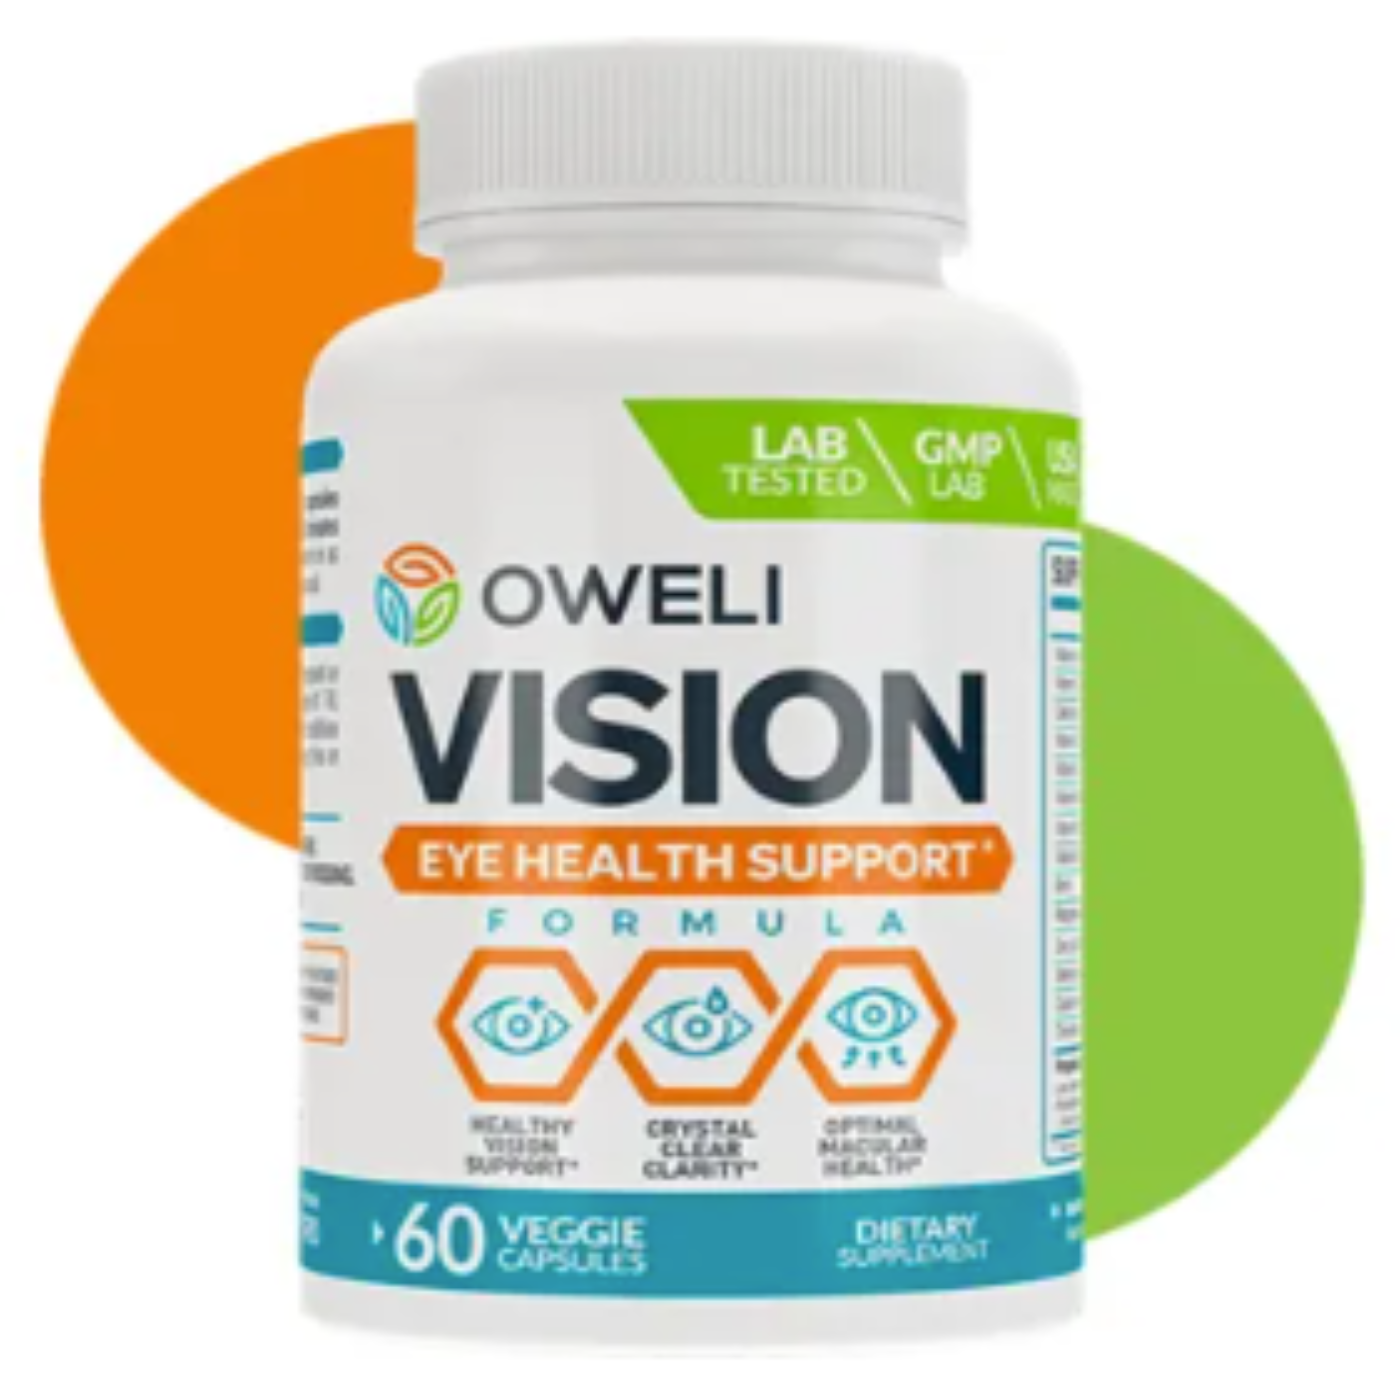 Oweli-Vision-Reviews.png